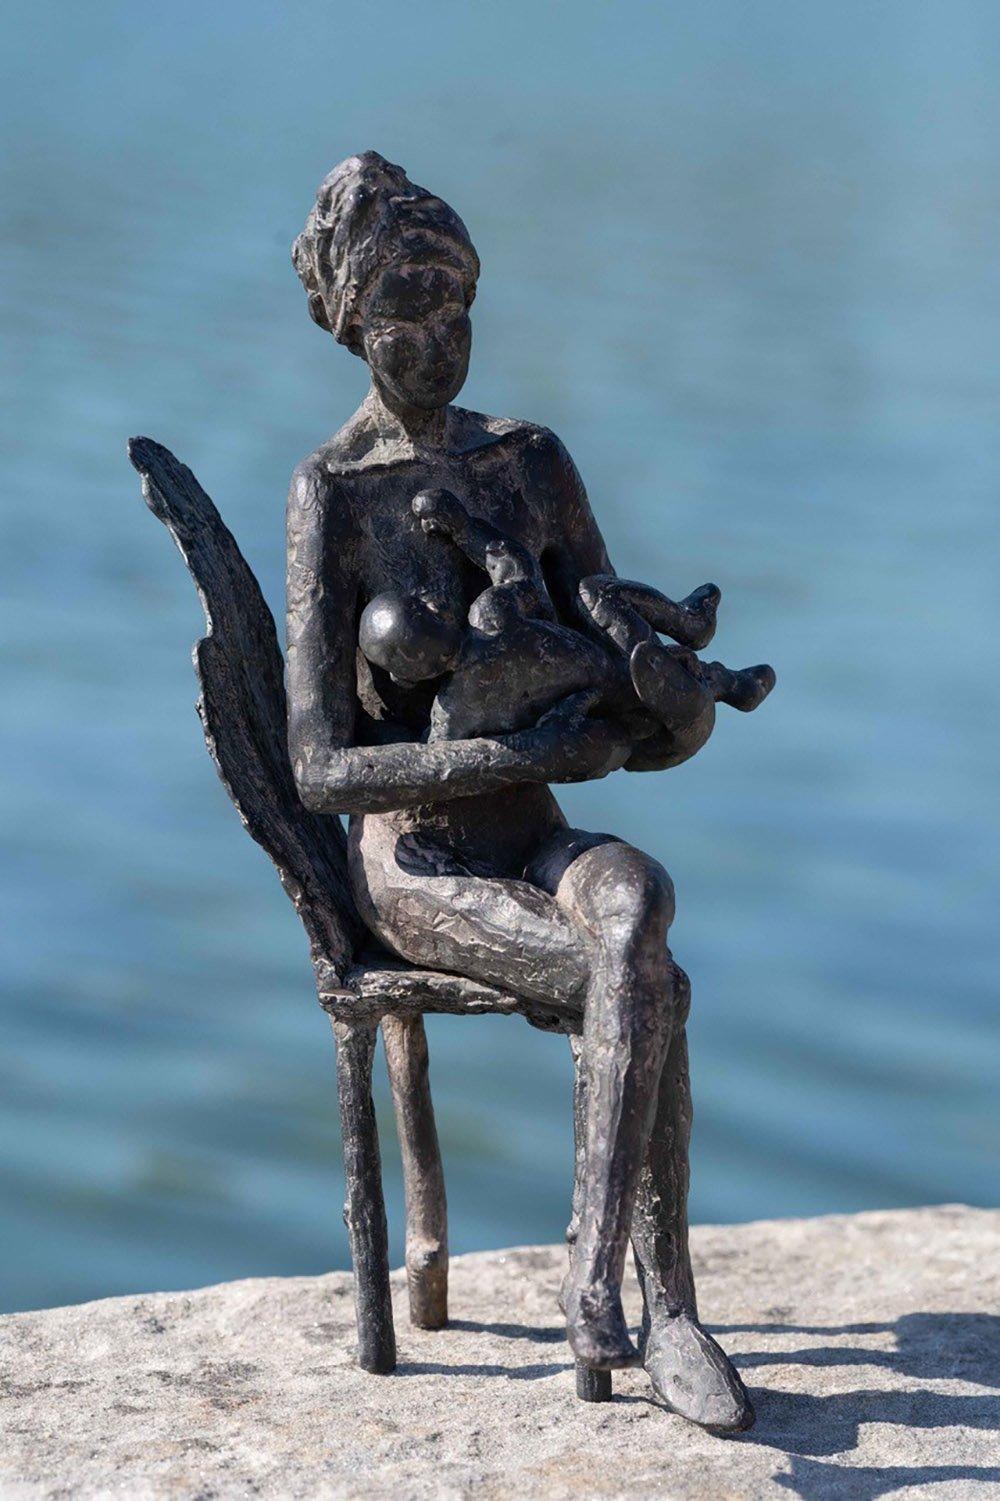 The Early Morning est une sculpture en bronze de l'artiste contemporaine française Marine de Soos, dont les dimensions sont de 24 × 17 × 11,5 cm (9,4 × 6,7 × 4,5 in). 
La sculpture est signée et numérotée, elle fait partie d'une édition limitée à 8